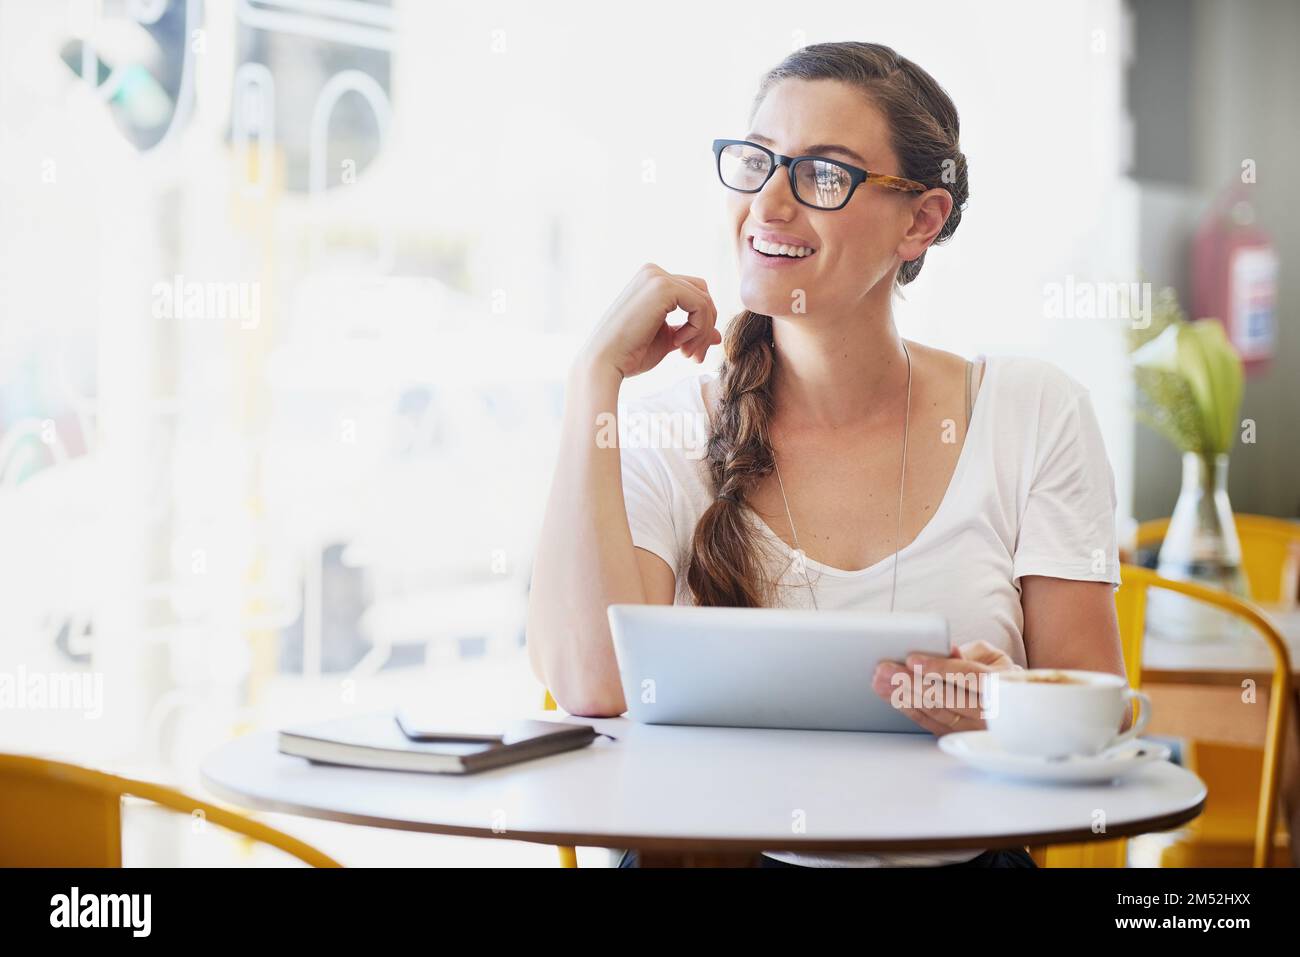 Collegato e caffeinato. una giovane donna rilassata che usa la sua tavoletta mentre beve caffè nel suo caffè preferito. Foto Stock